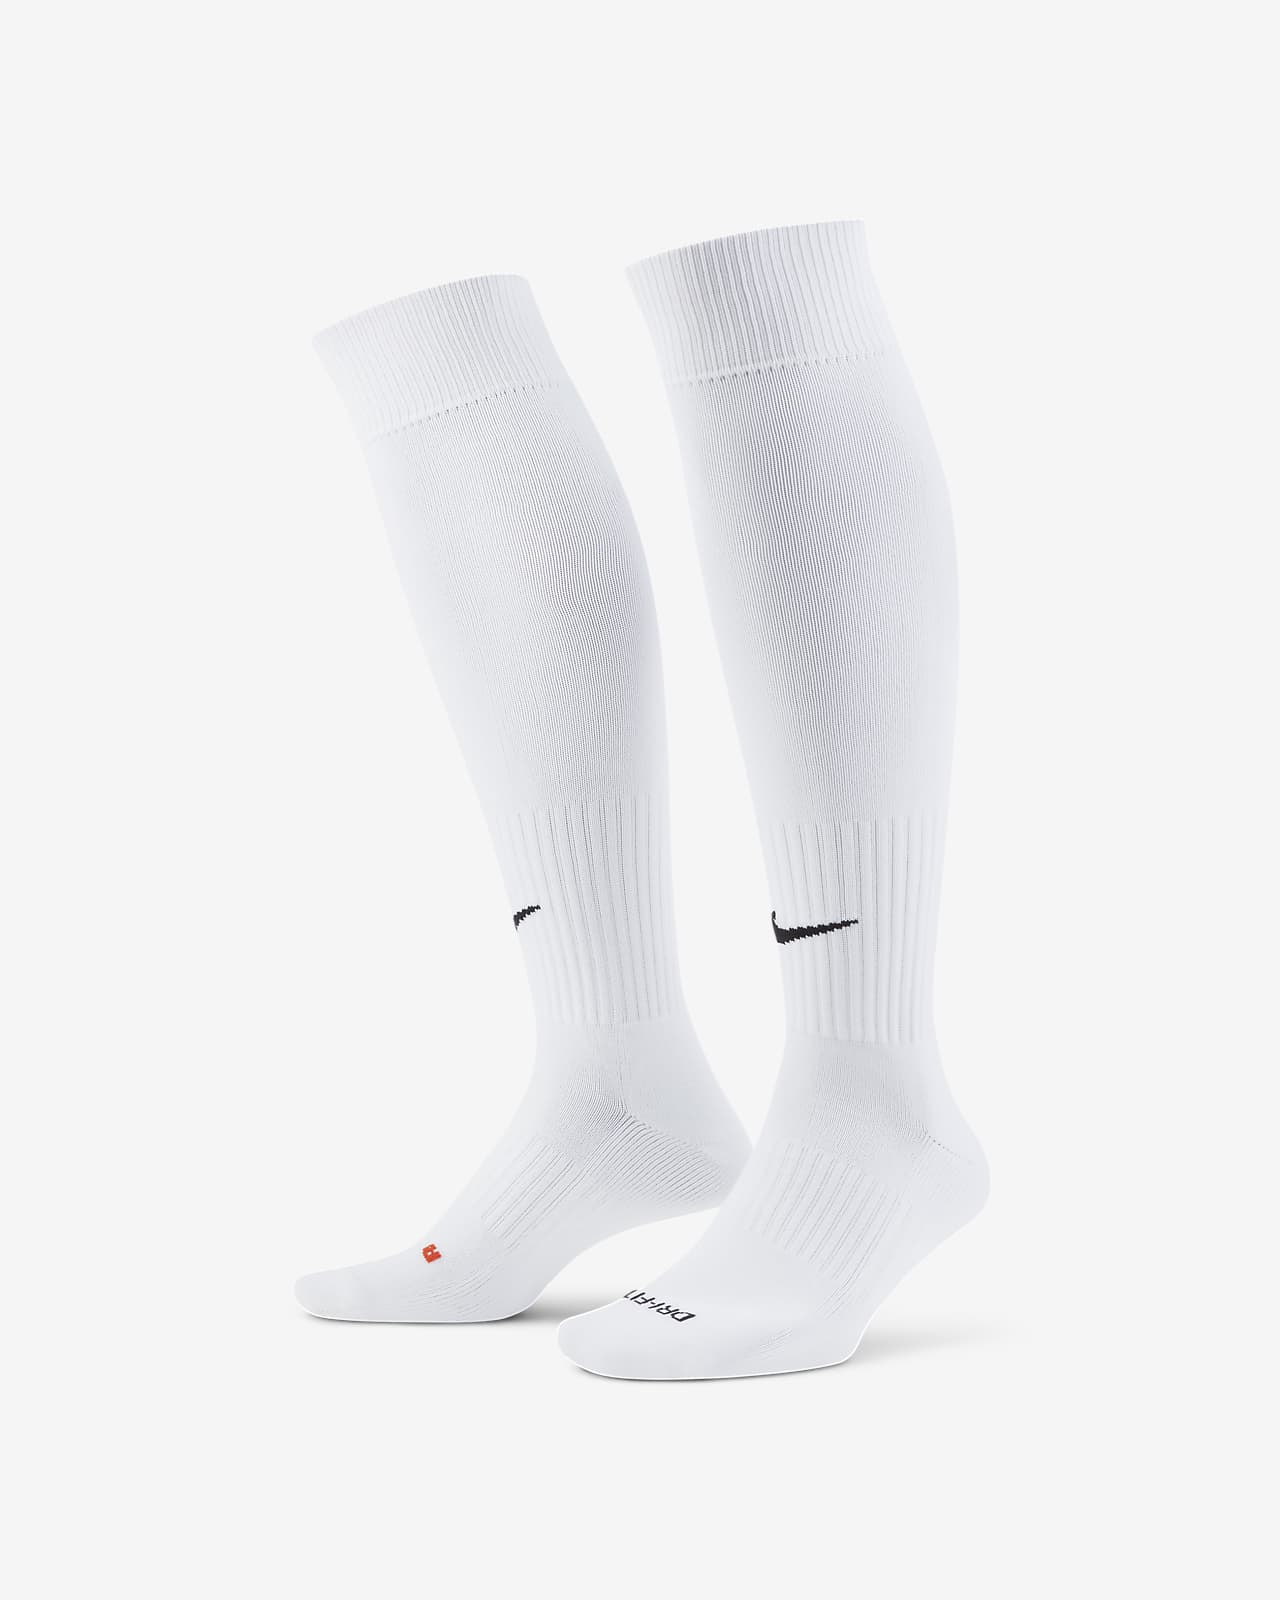 Nike Academy 足球小腿襪